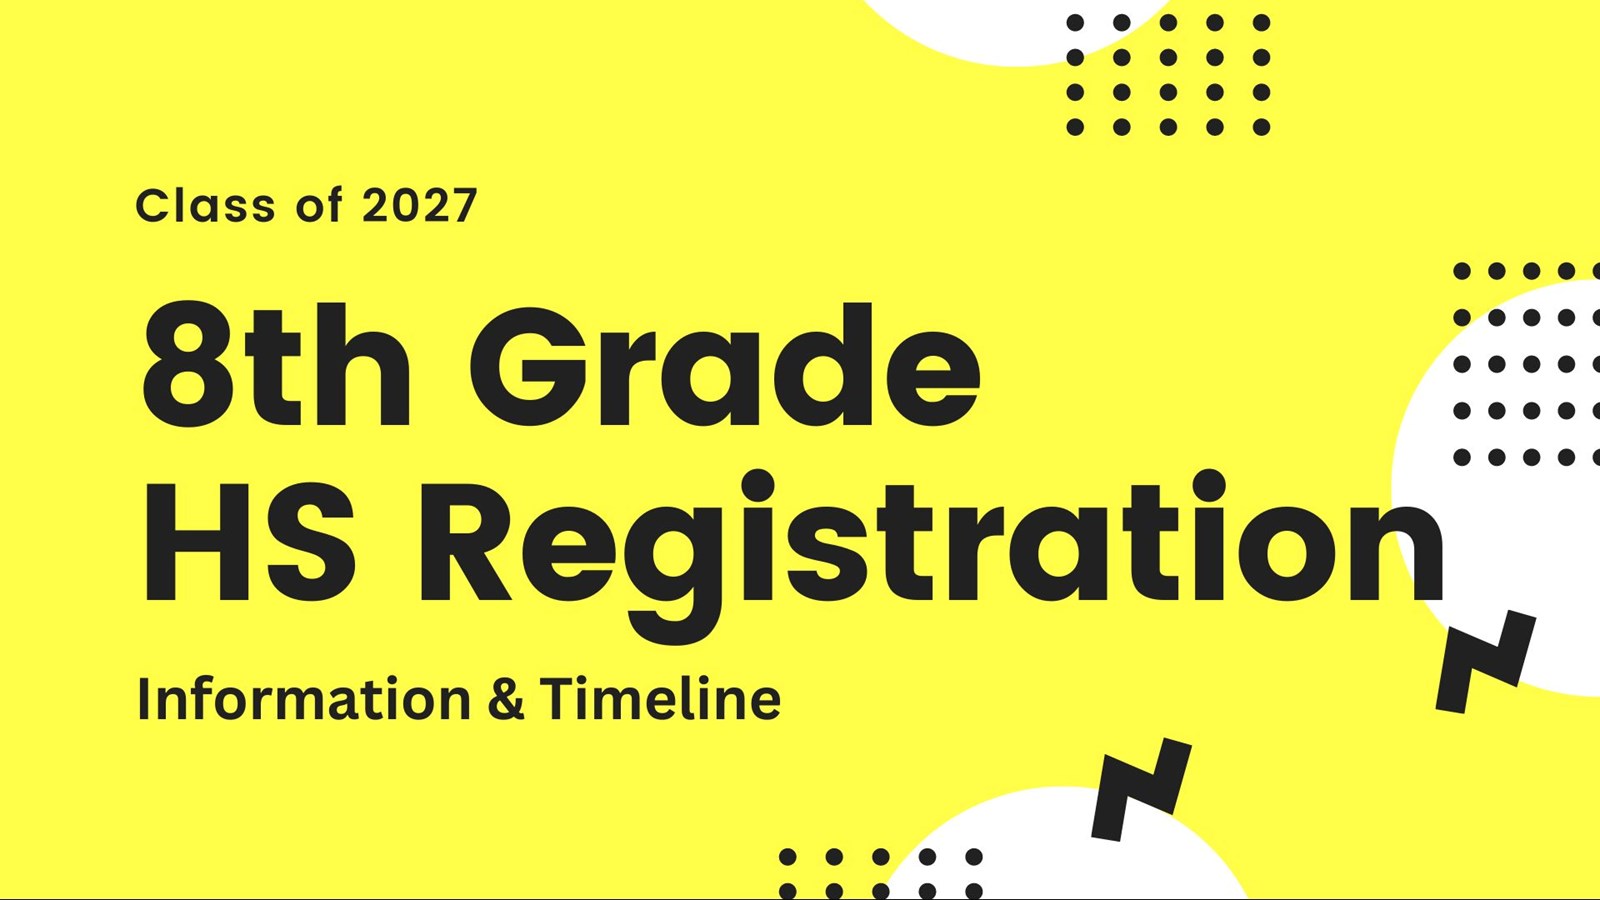 8th Grade Registration Timeline